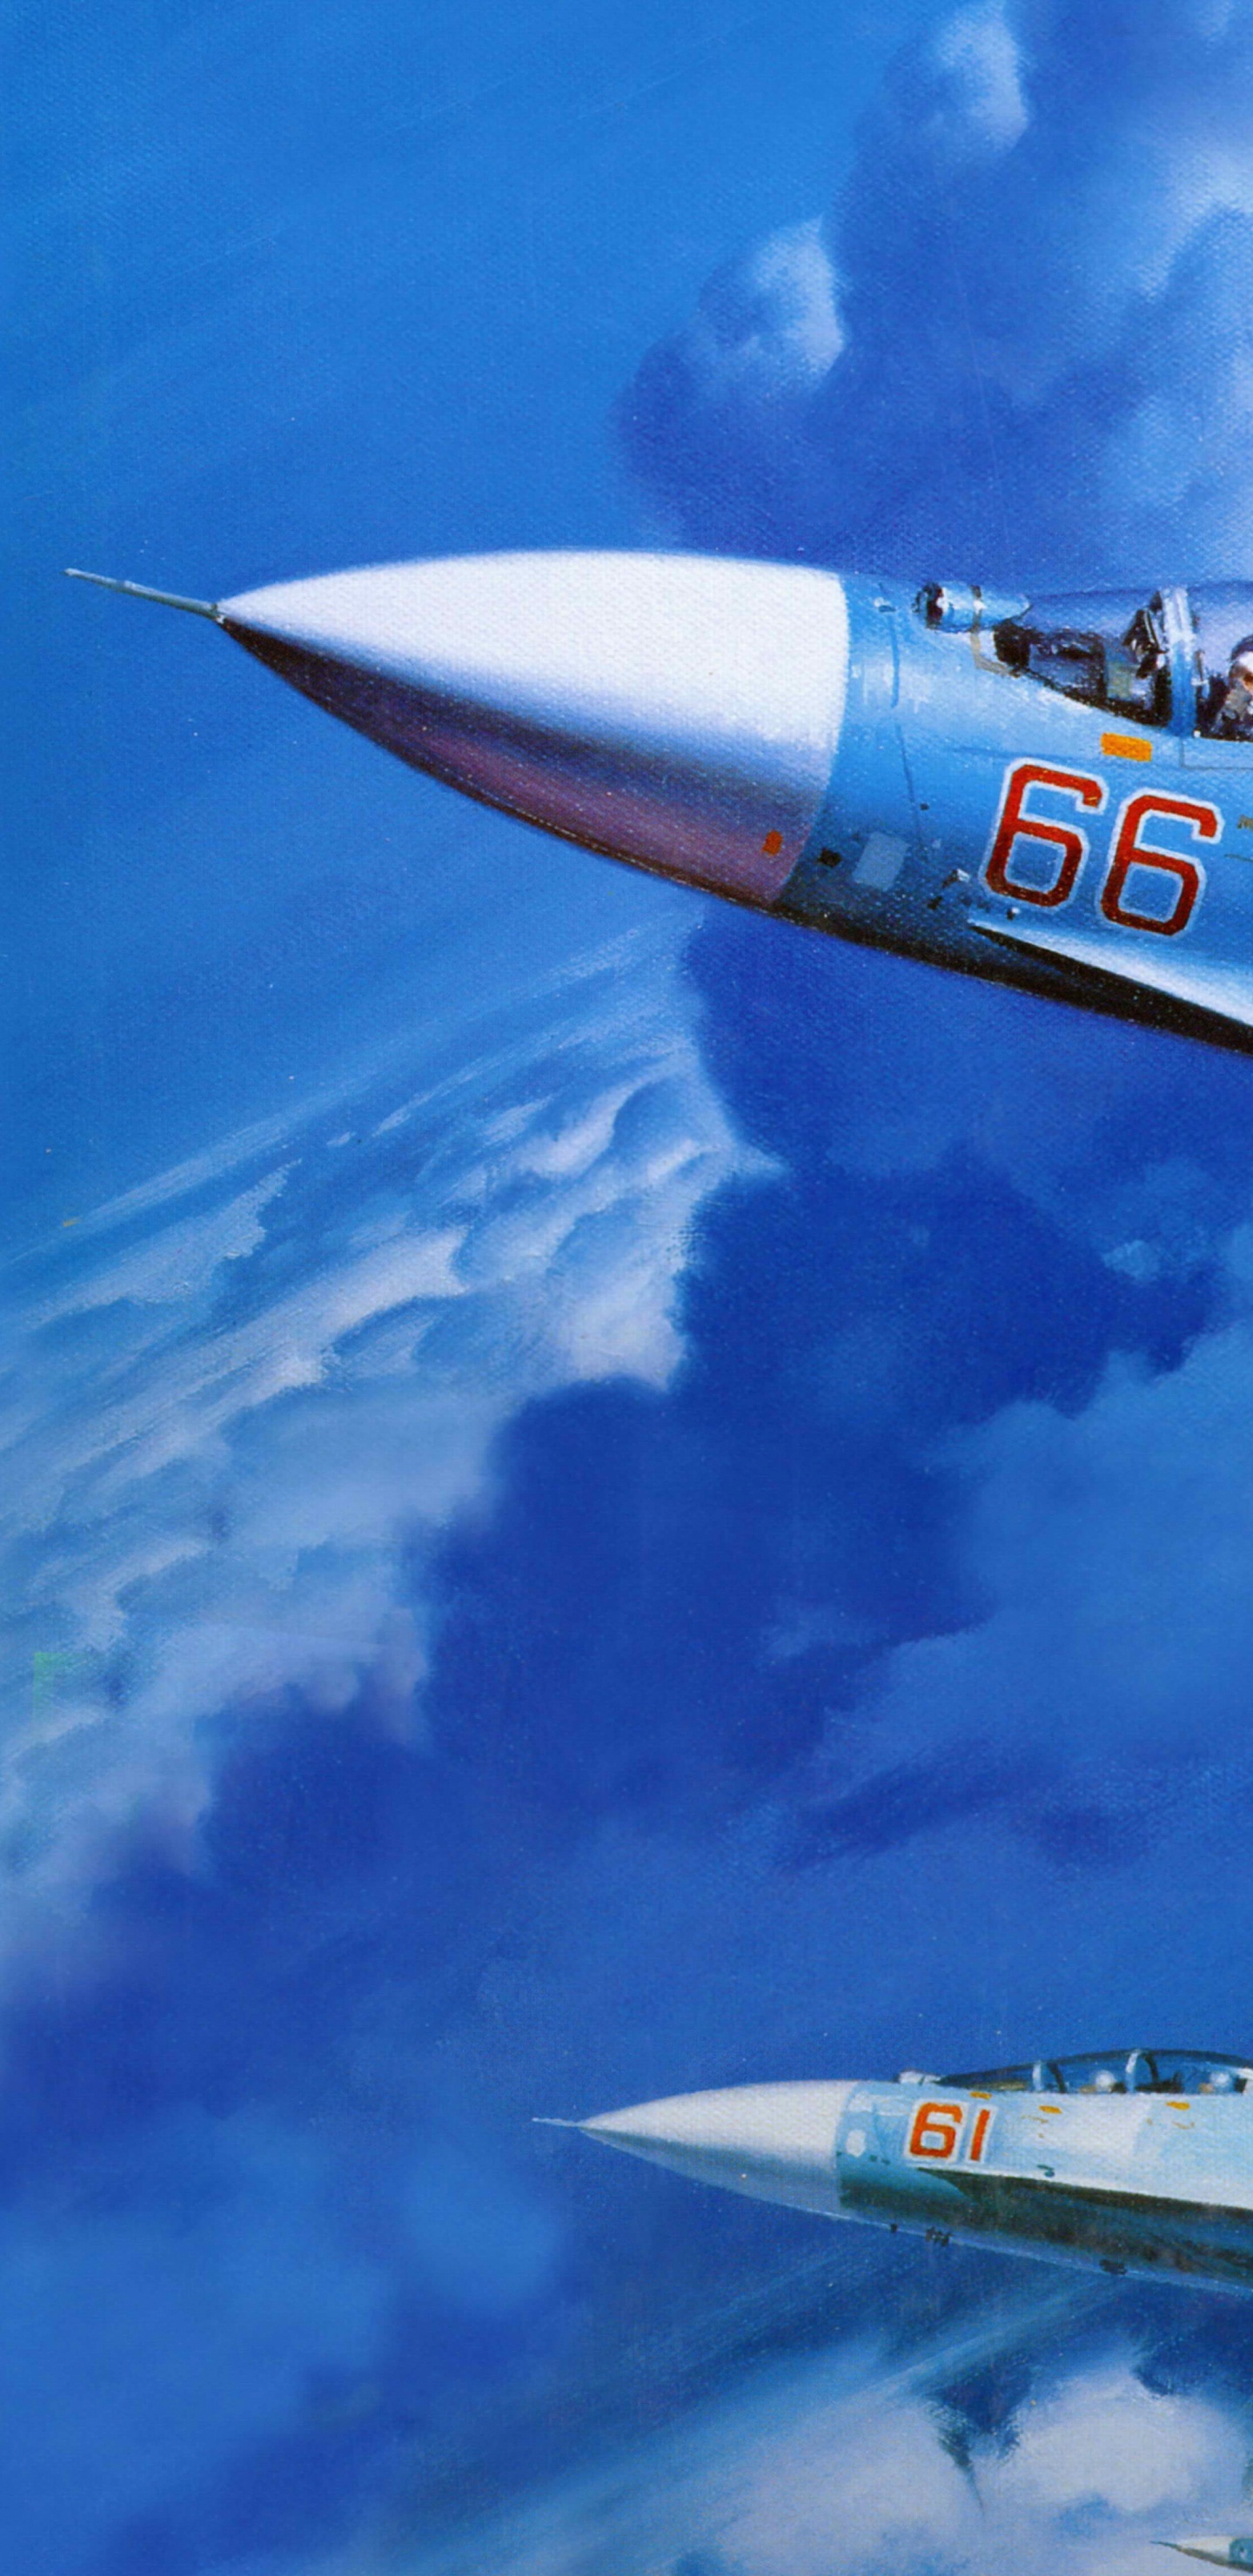 Weißes Und Blaues Düsenflugzeug Unter Blauem Himmel Tagsüber. Wallpaper in 1440x2960 Resolution